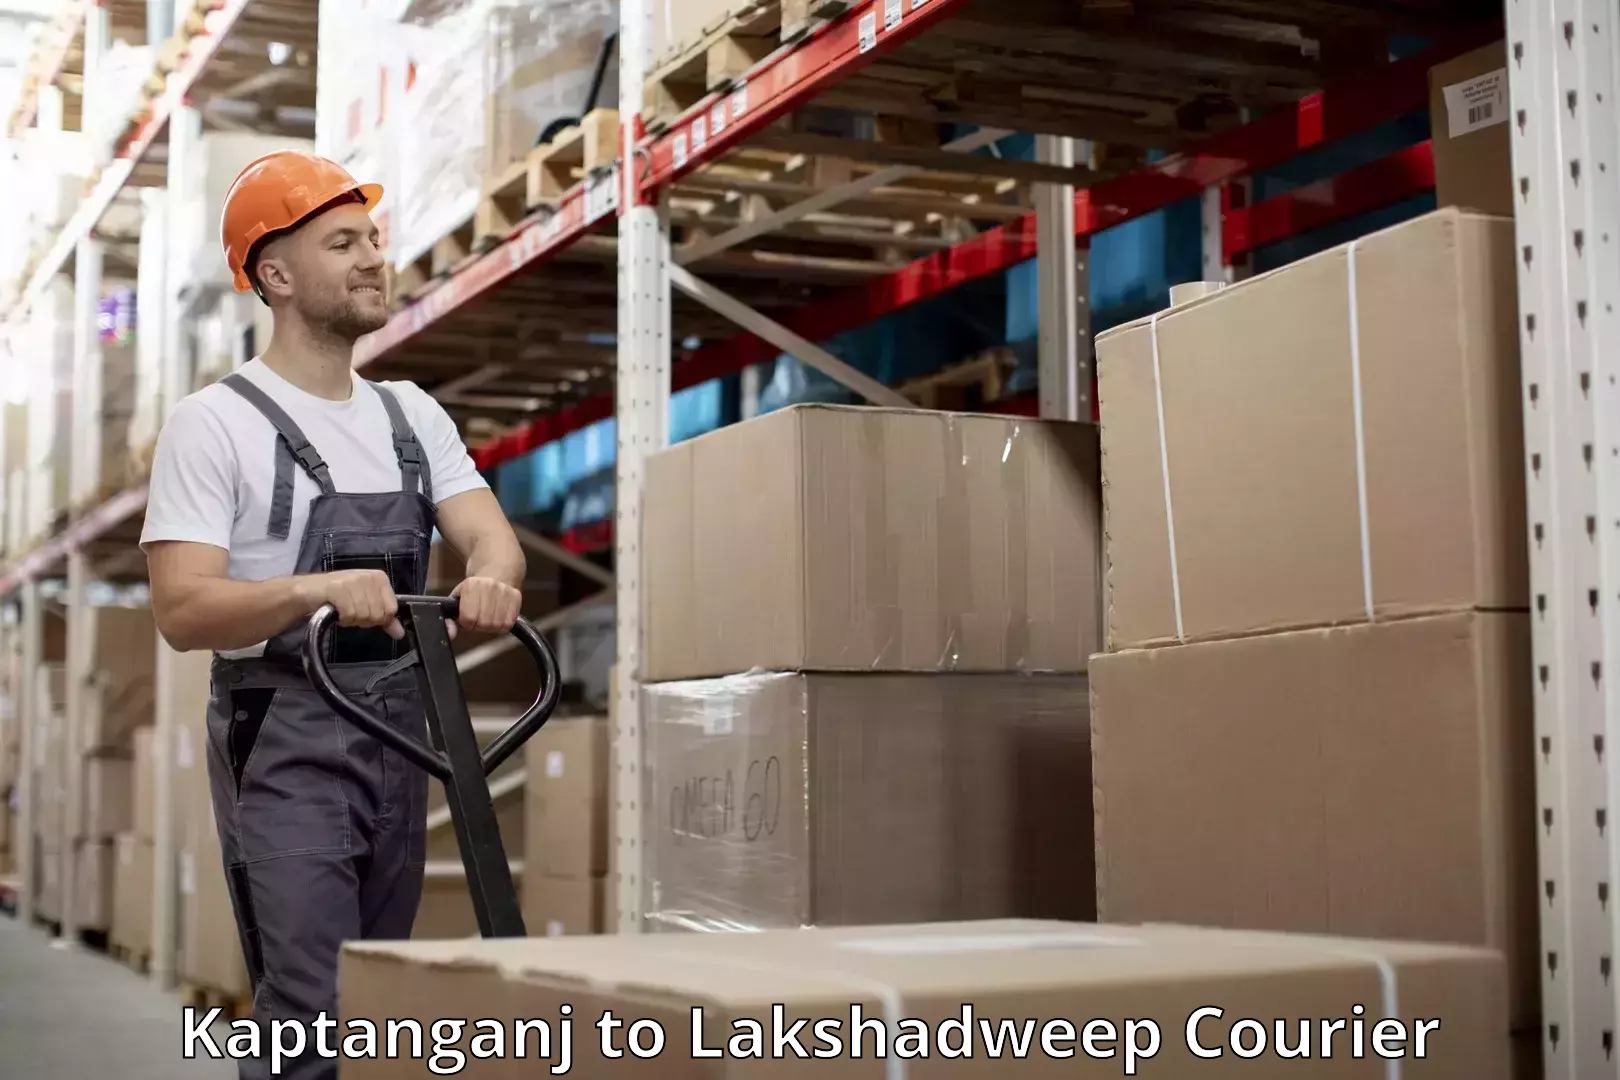 Luggage shipment tracking Kaptanganj to Lakshadweep